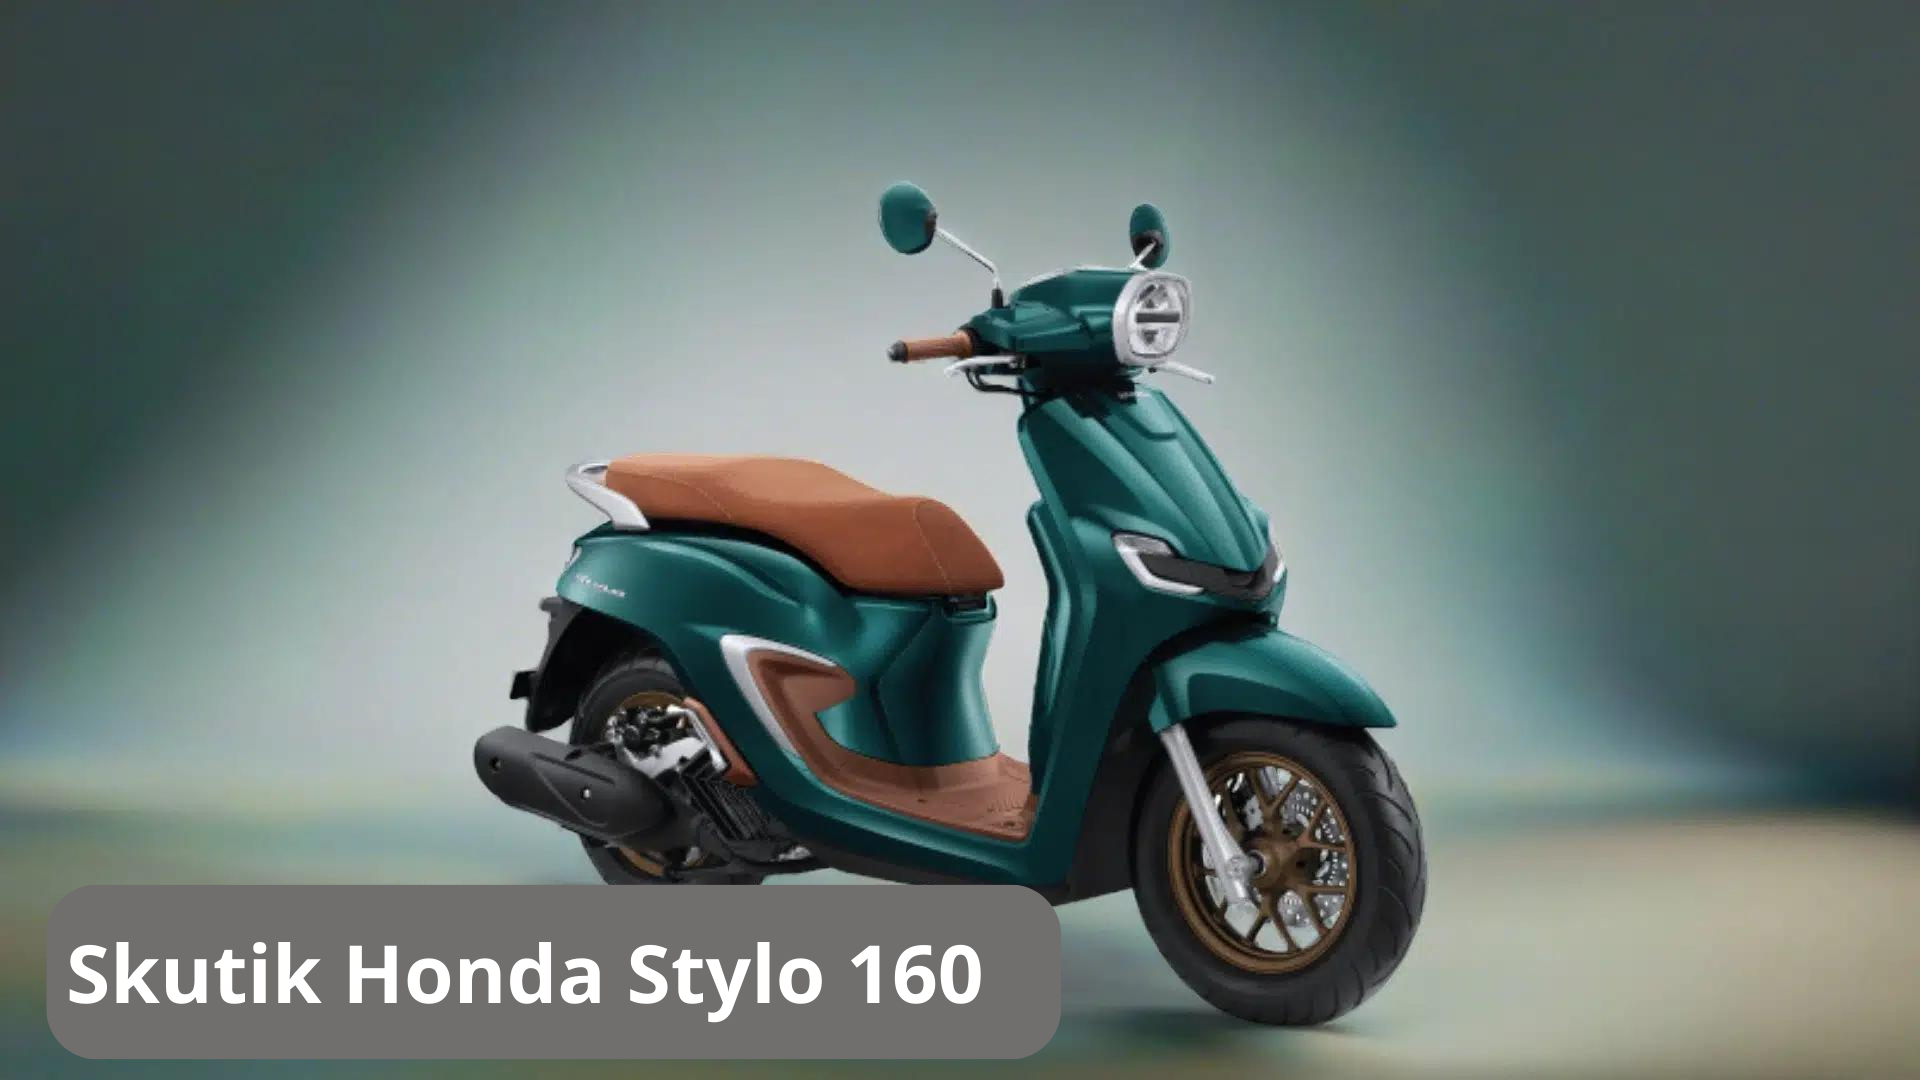 Skutik Honda Stylo 160, Punya Performa Tangguh dengan Tampilan Klasik dengan Desain yang Modern